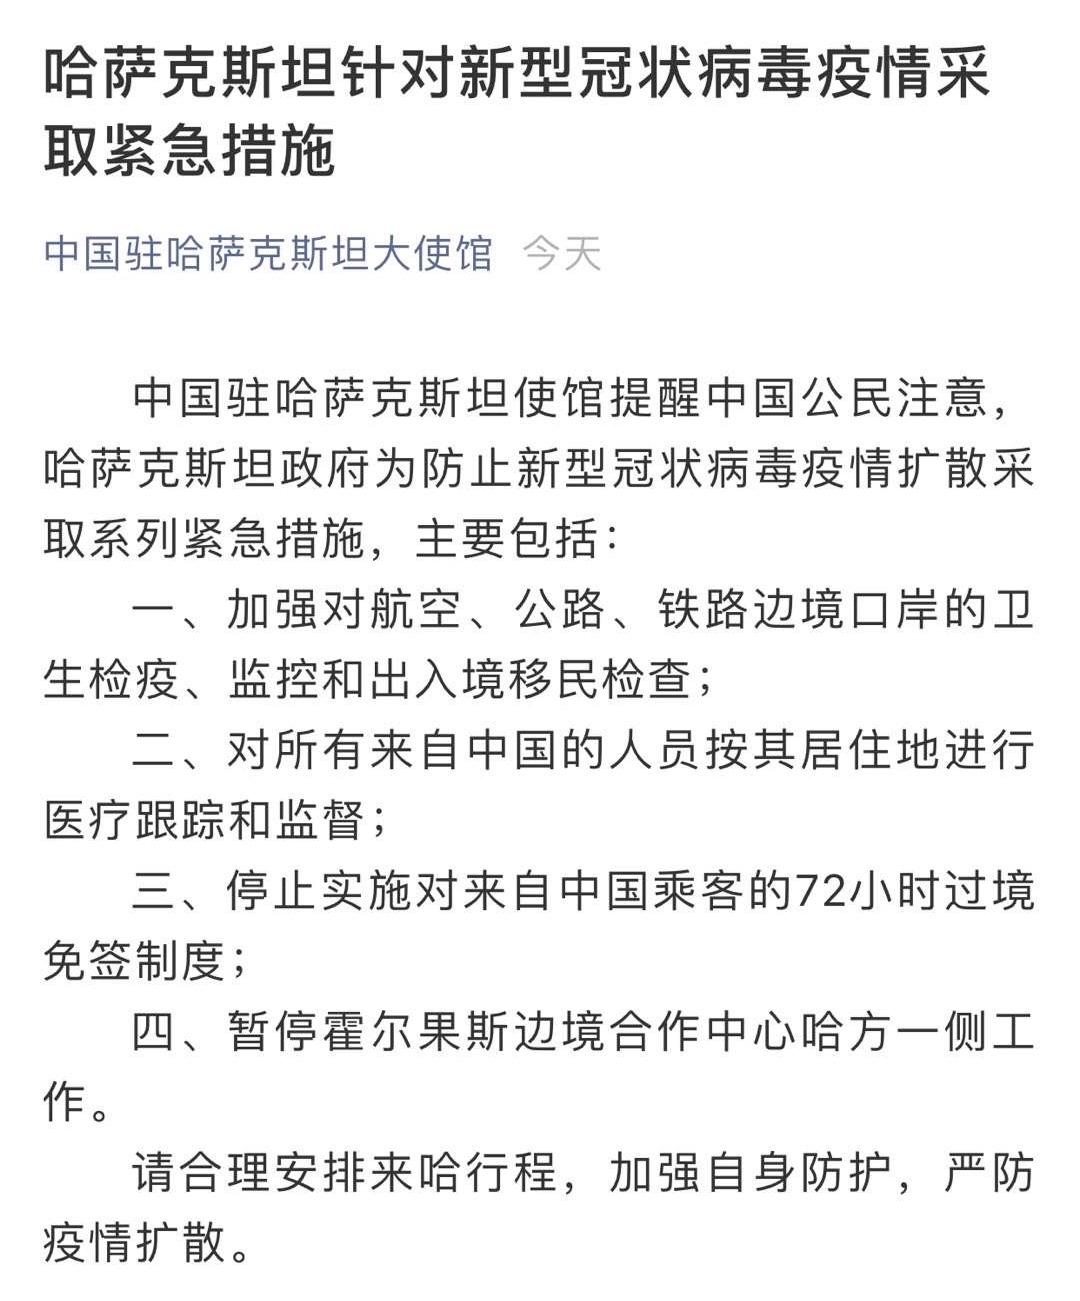 中国多地实行144小时过境免签 扩大开放步伐持续向前_新闻中心_中国网